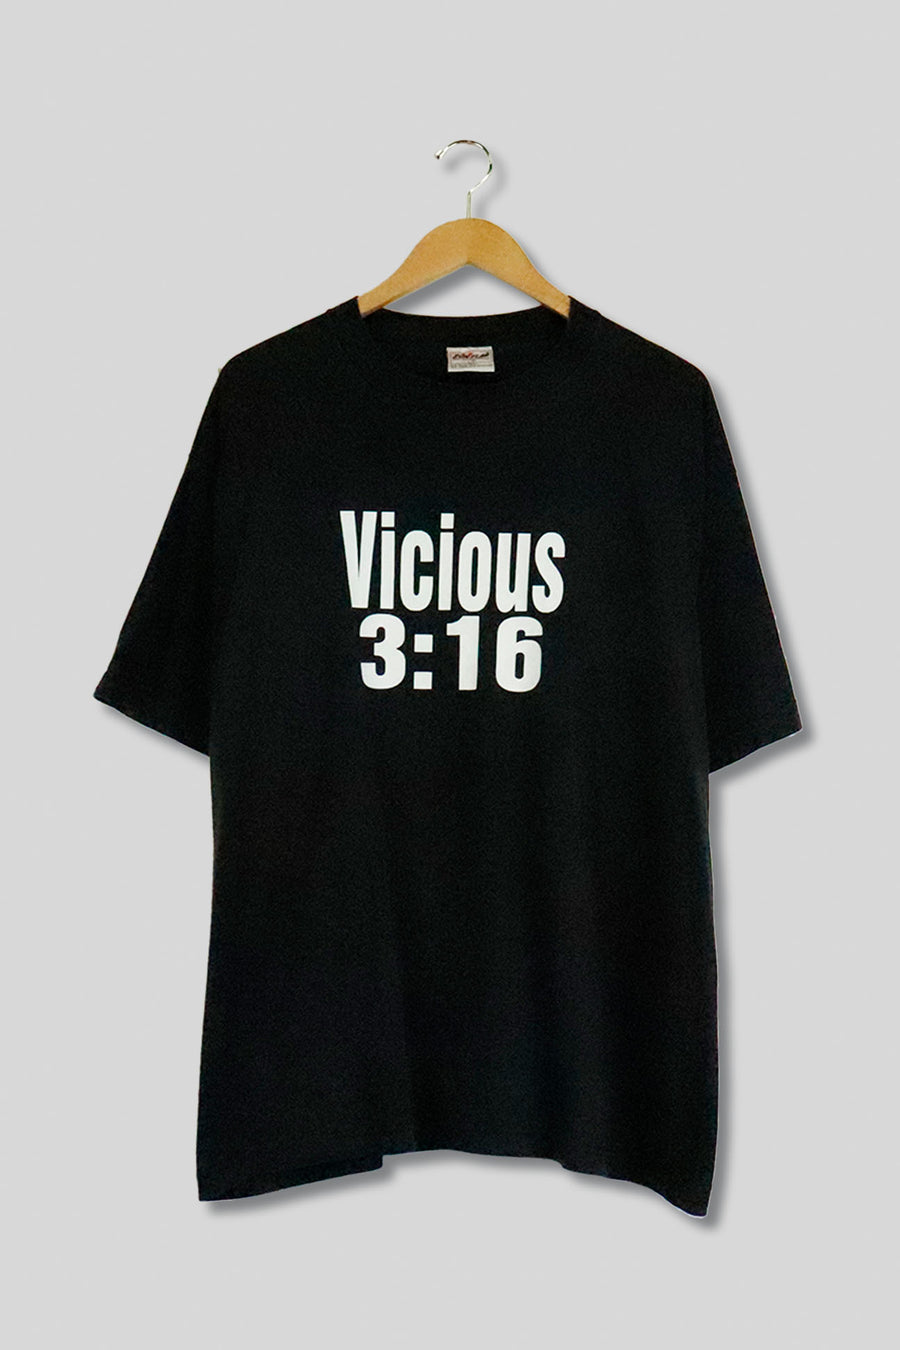 Vintage Vicious 3:16 T Shirt Sz L